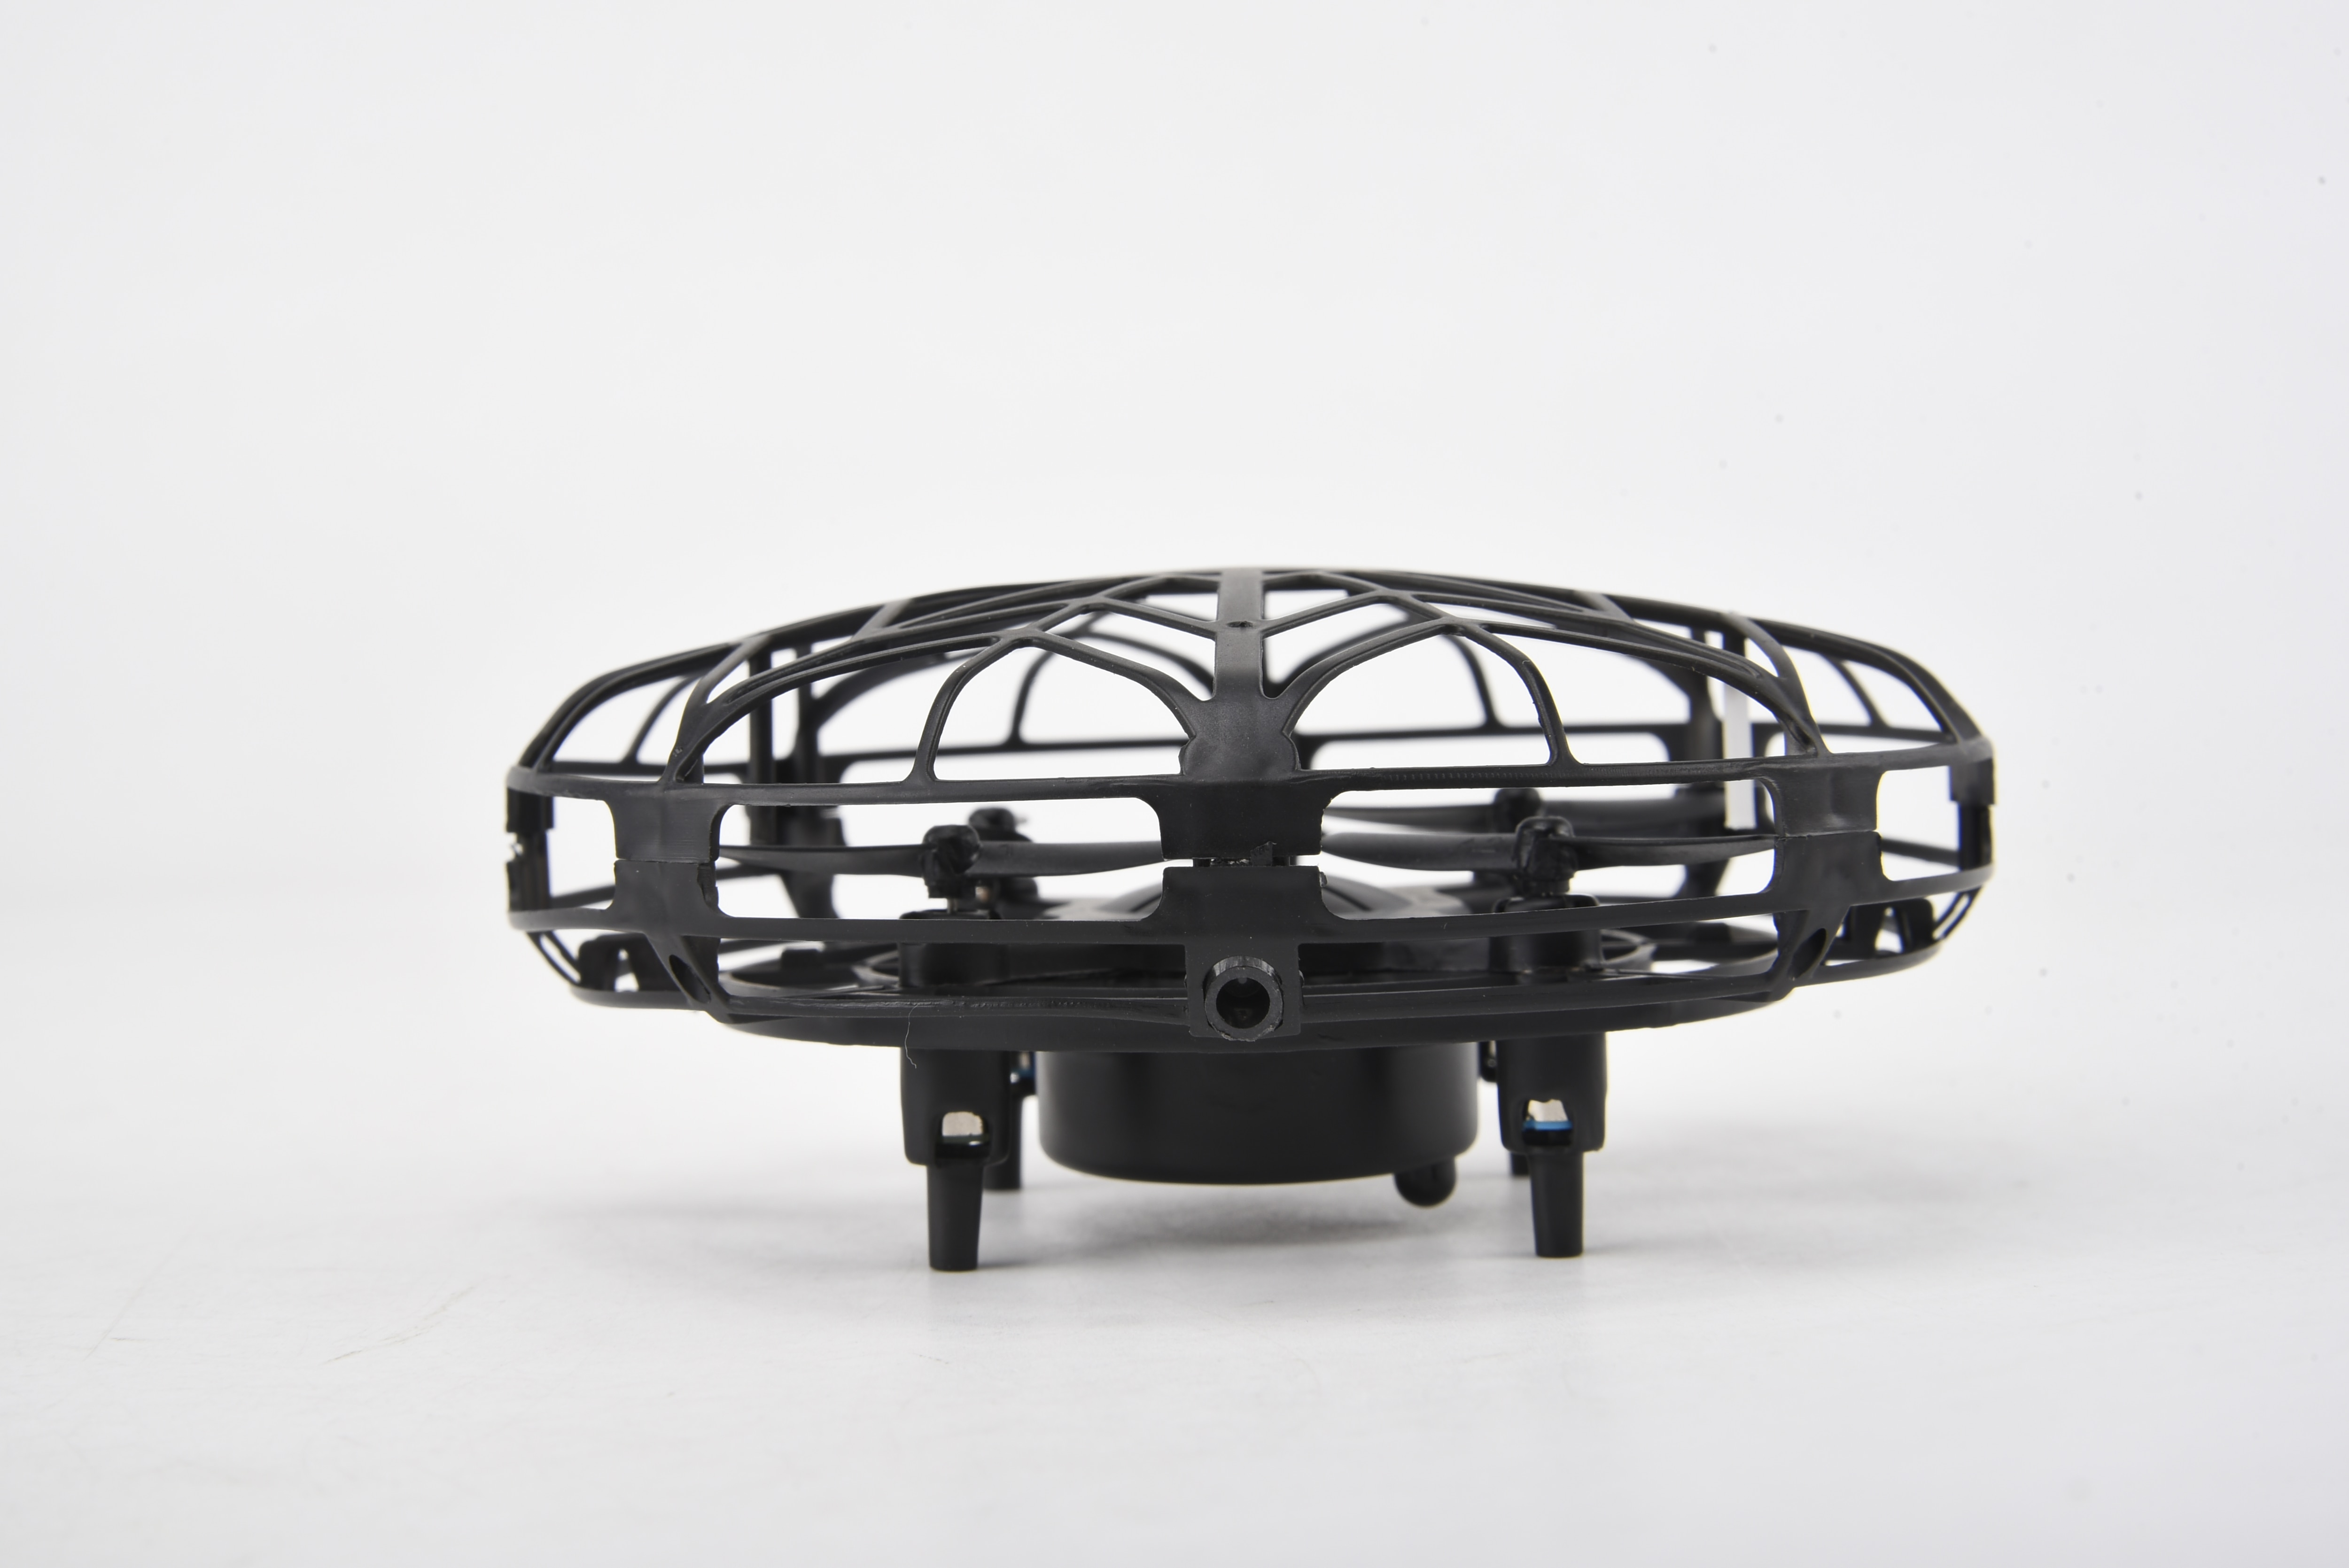 Smart Drone UFO schwarz